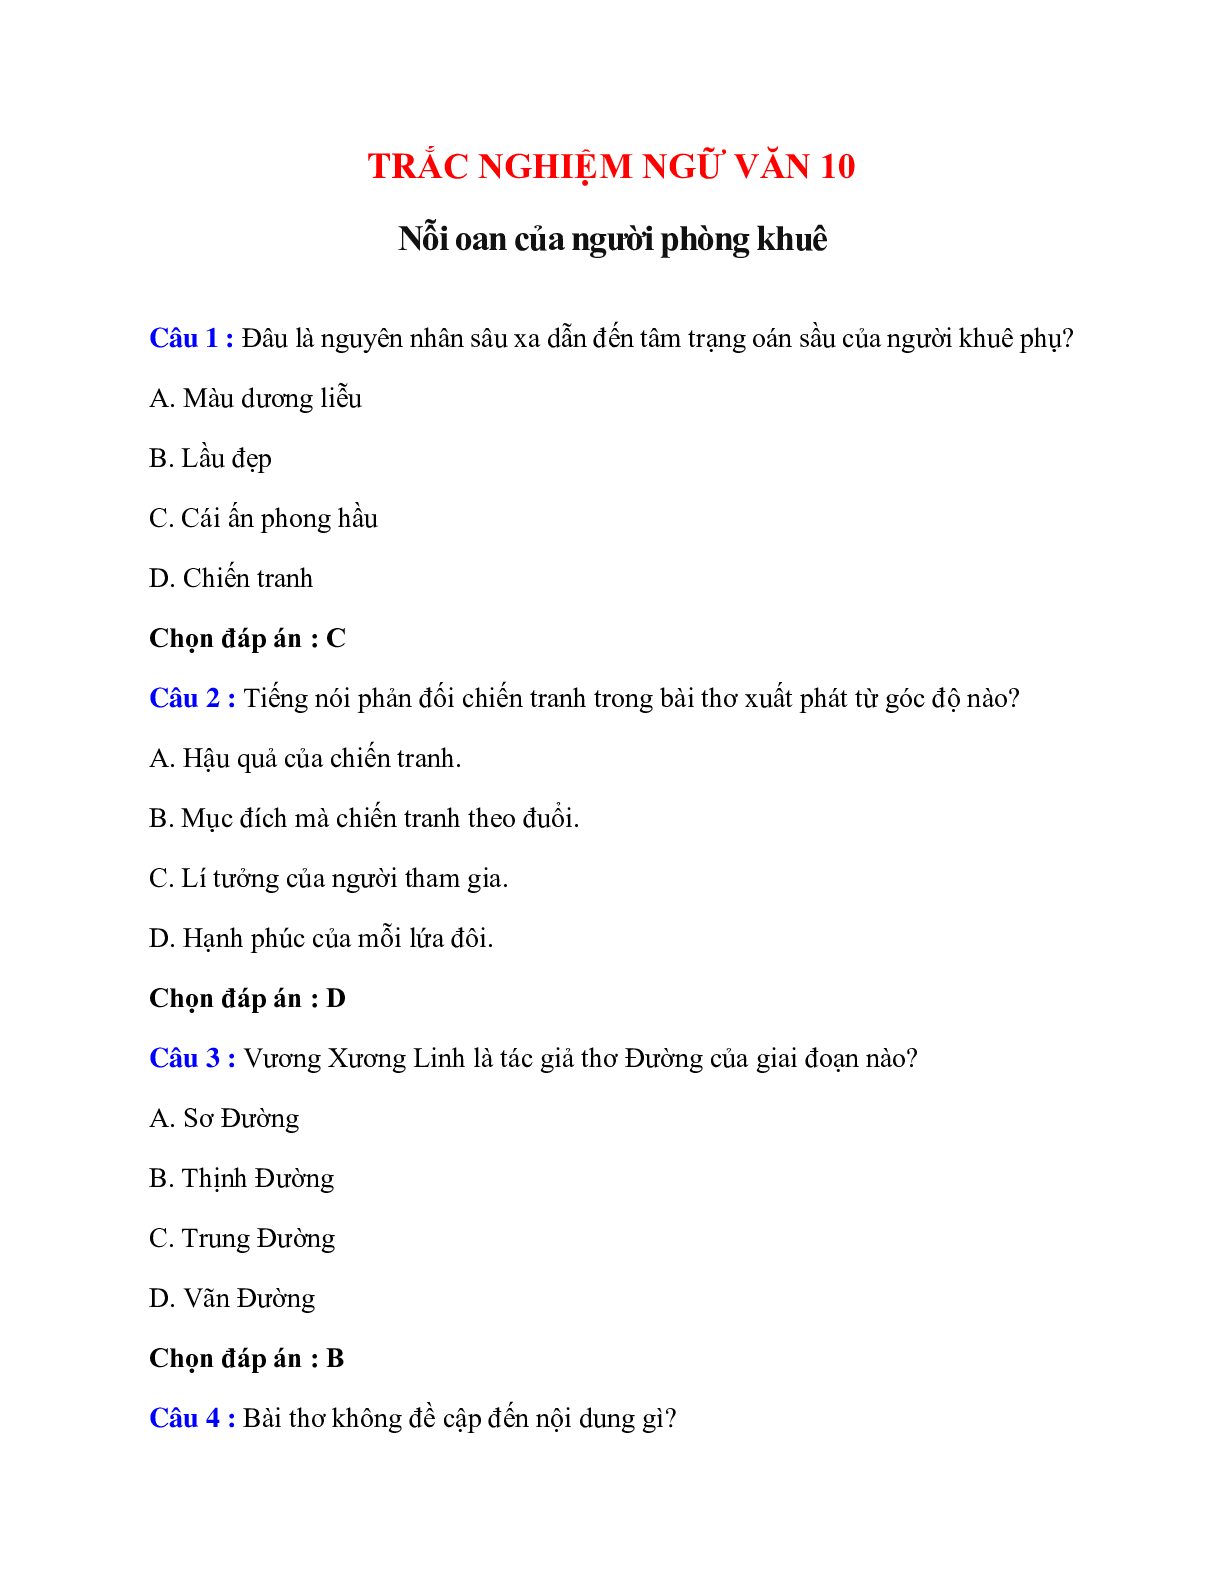 Trắc nghiệm Nỗi oan của người phòng khuê có đáp án – Ngữ văn lớp 10 (trang 1)